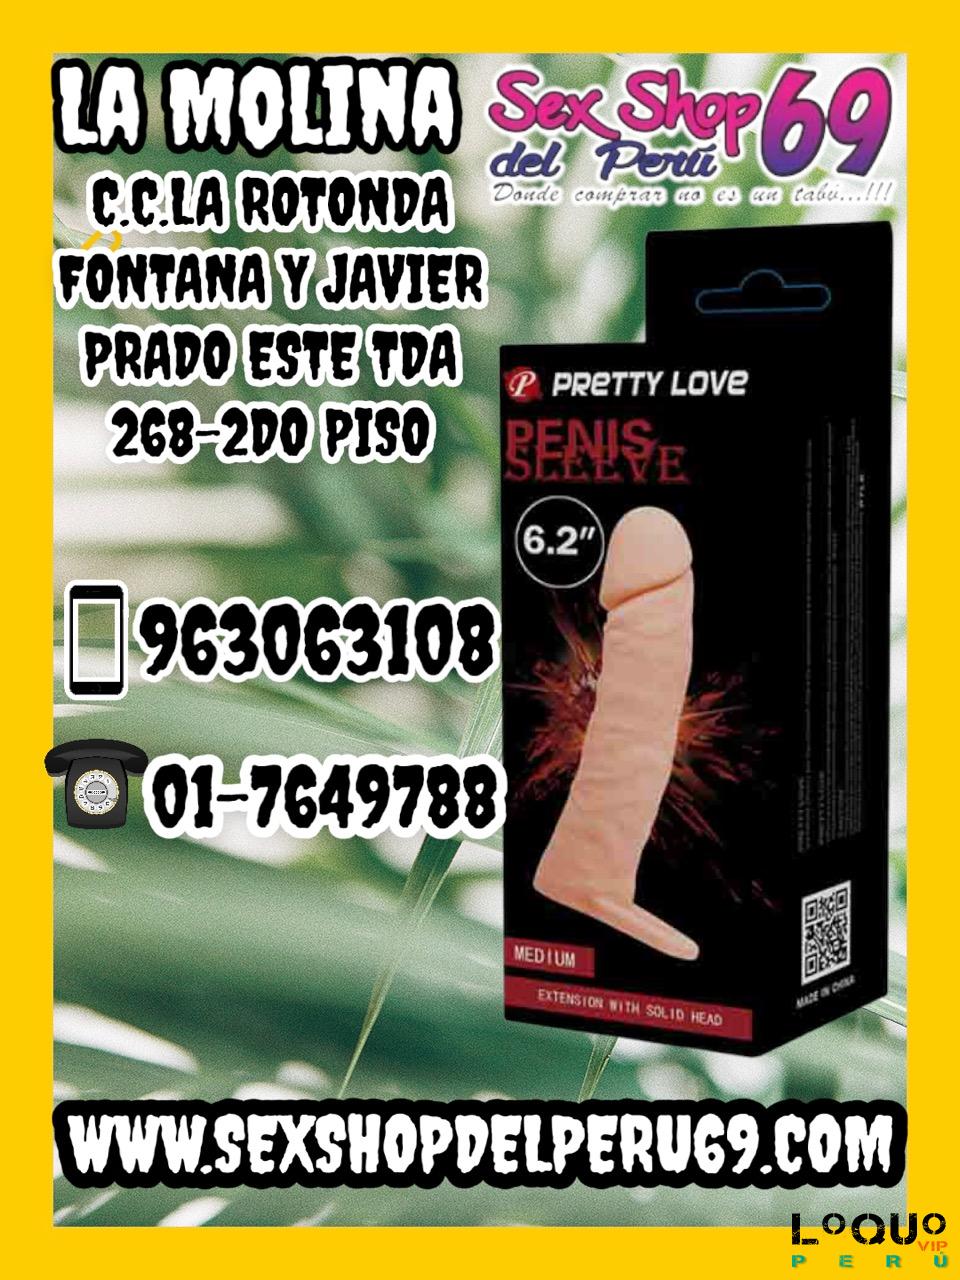 Sex Shop Lima Metropolitana: Vibrador Fantasy Ultimate Para Ella  DILDOS SEXSHOP69 LA MOLINA DELIVERY GRATIS